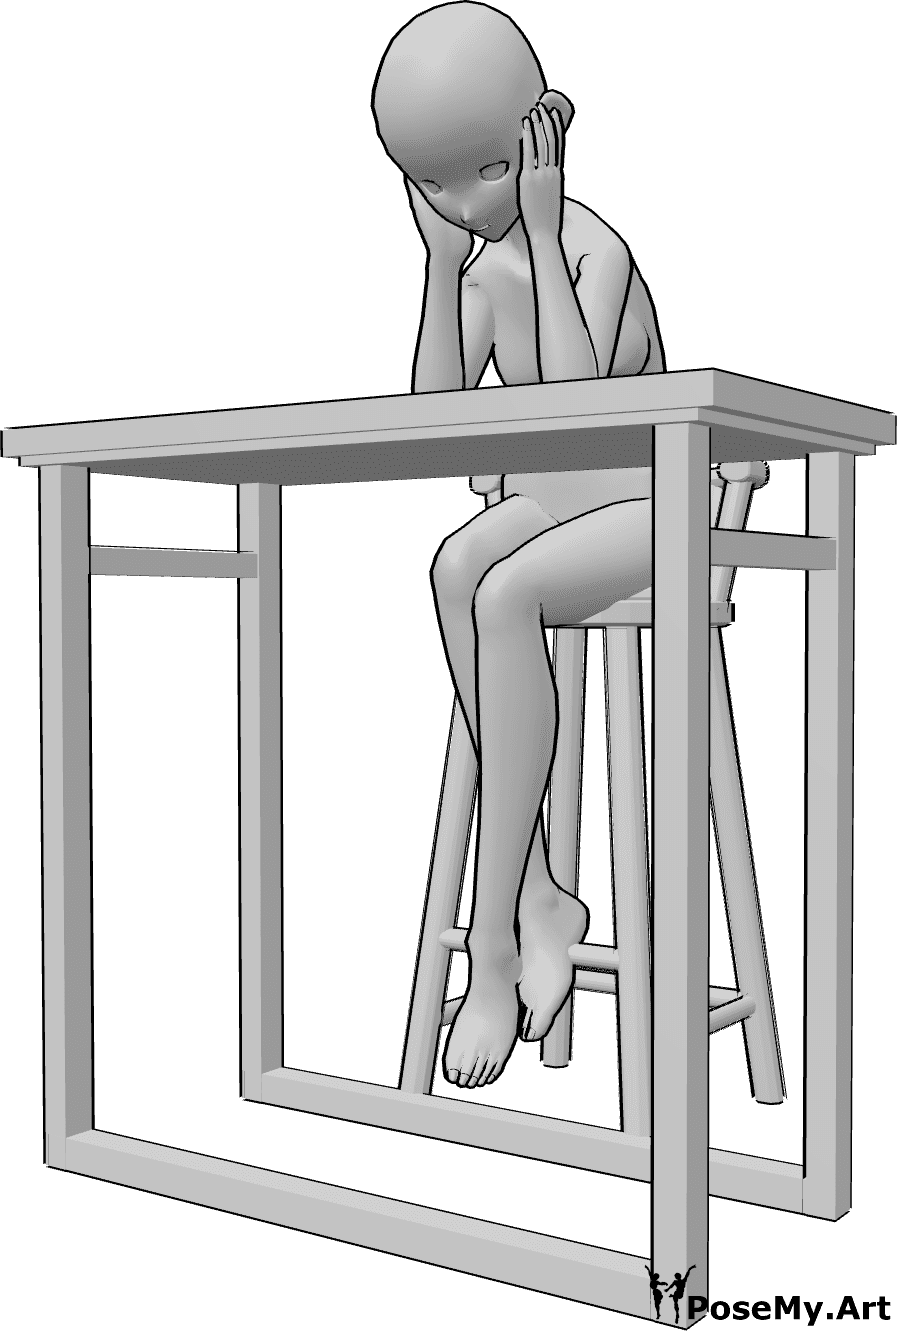 Referencia de poses- Postura triste de mujer anime - Triste mujer anime está sentada en un taburete de bar, apoyada en la mesa del bar, sosteniendo su cabeza con ambas manos